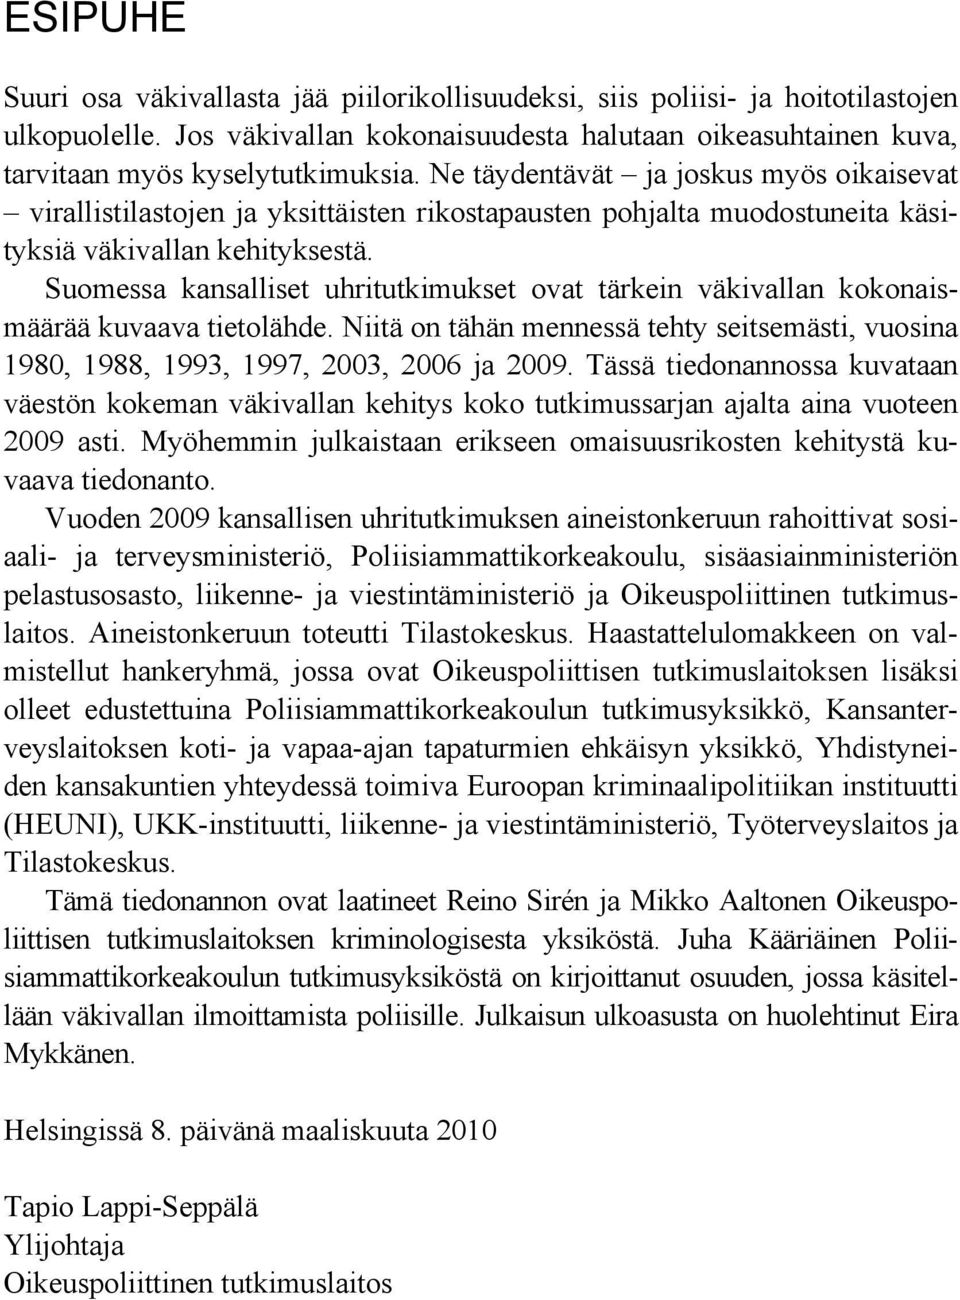 Suomessa kansalliset uhritutkimukset ovat tärkein väkivallan kokonaismäärää kuvaava tietolähde. Niitä on tähän mennessä tehty seitsemästi, vuosina 198, 1988, 1993, 1997, 3, ja 9.